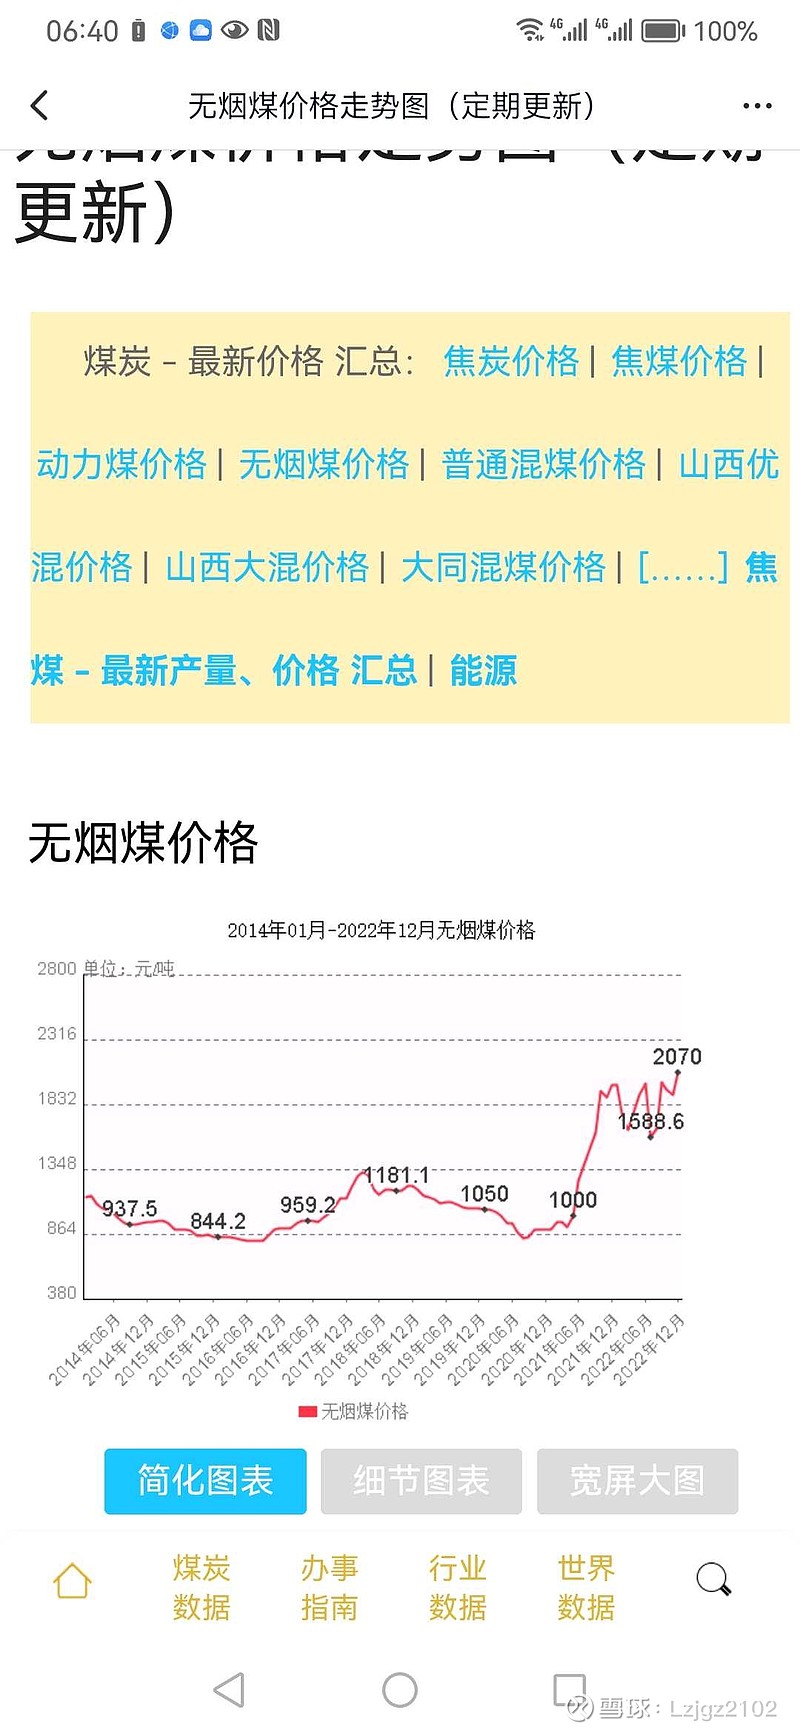 预测一下 上海能源 今年的分红